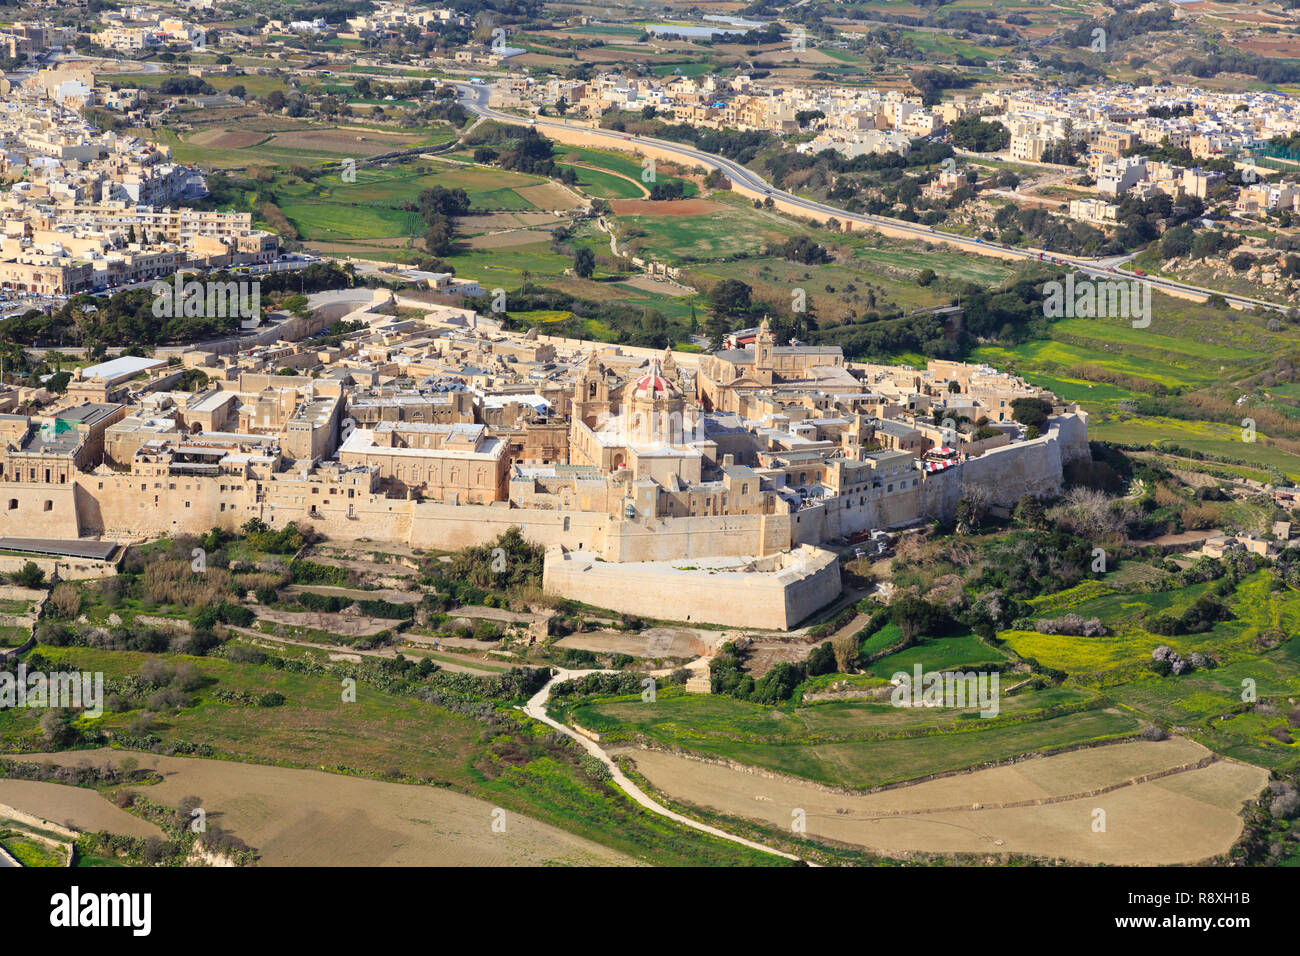 Vue aérienne de la ville fortifiée de Mdina, Malte. Banque D'Images